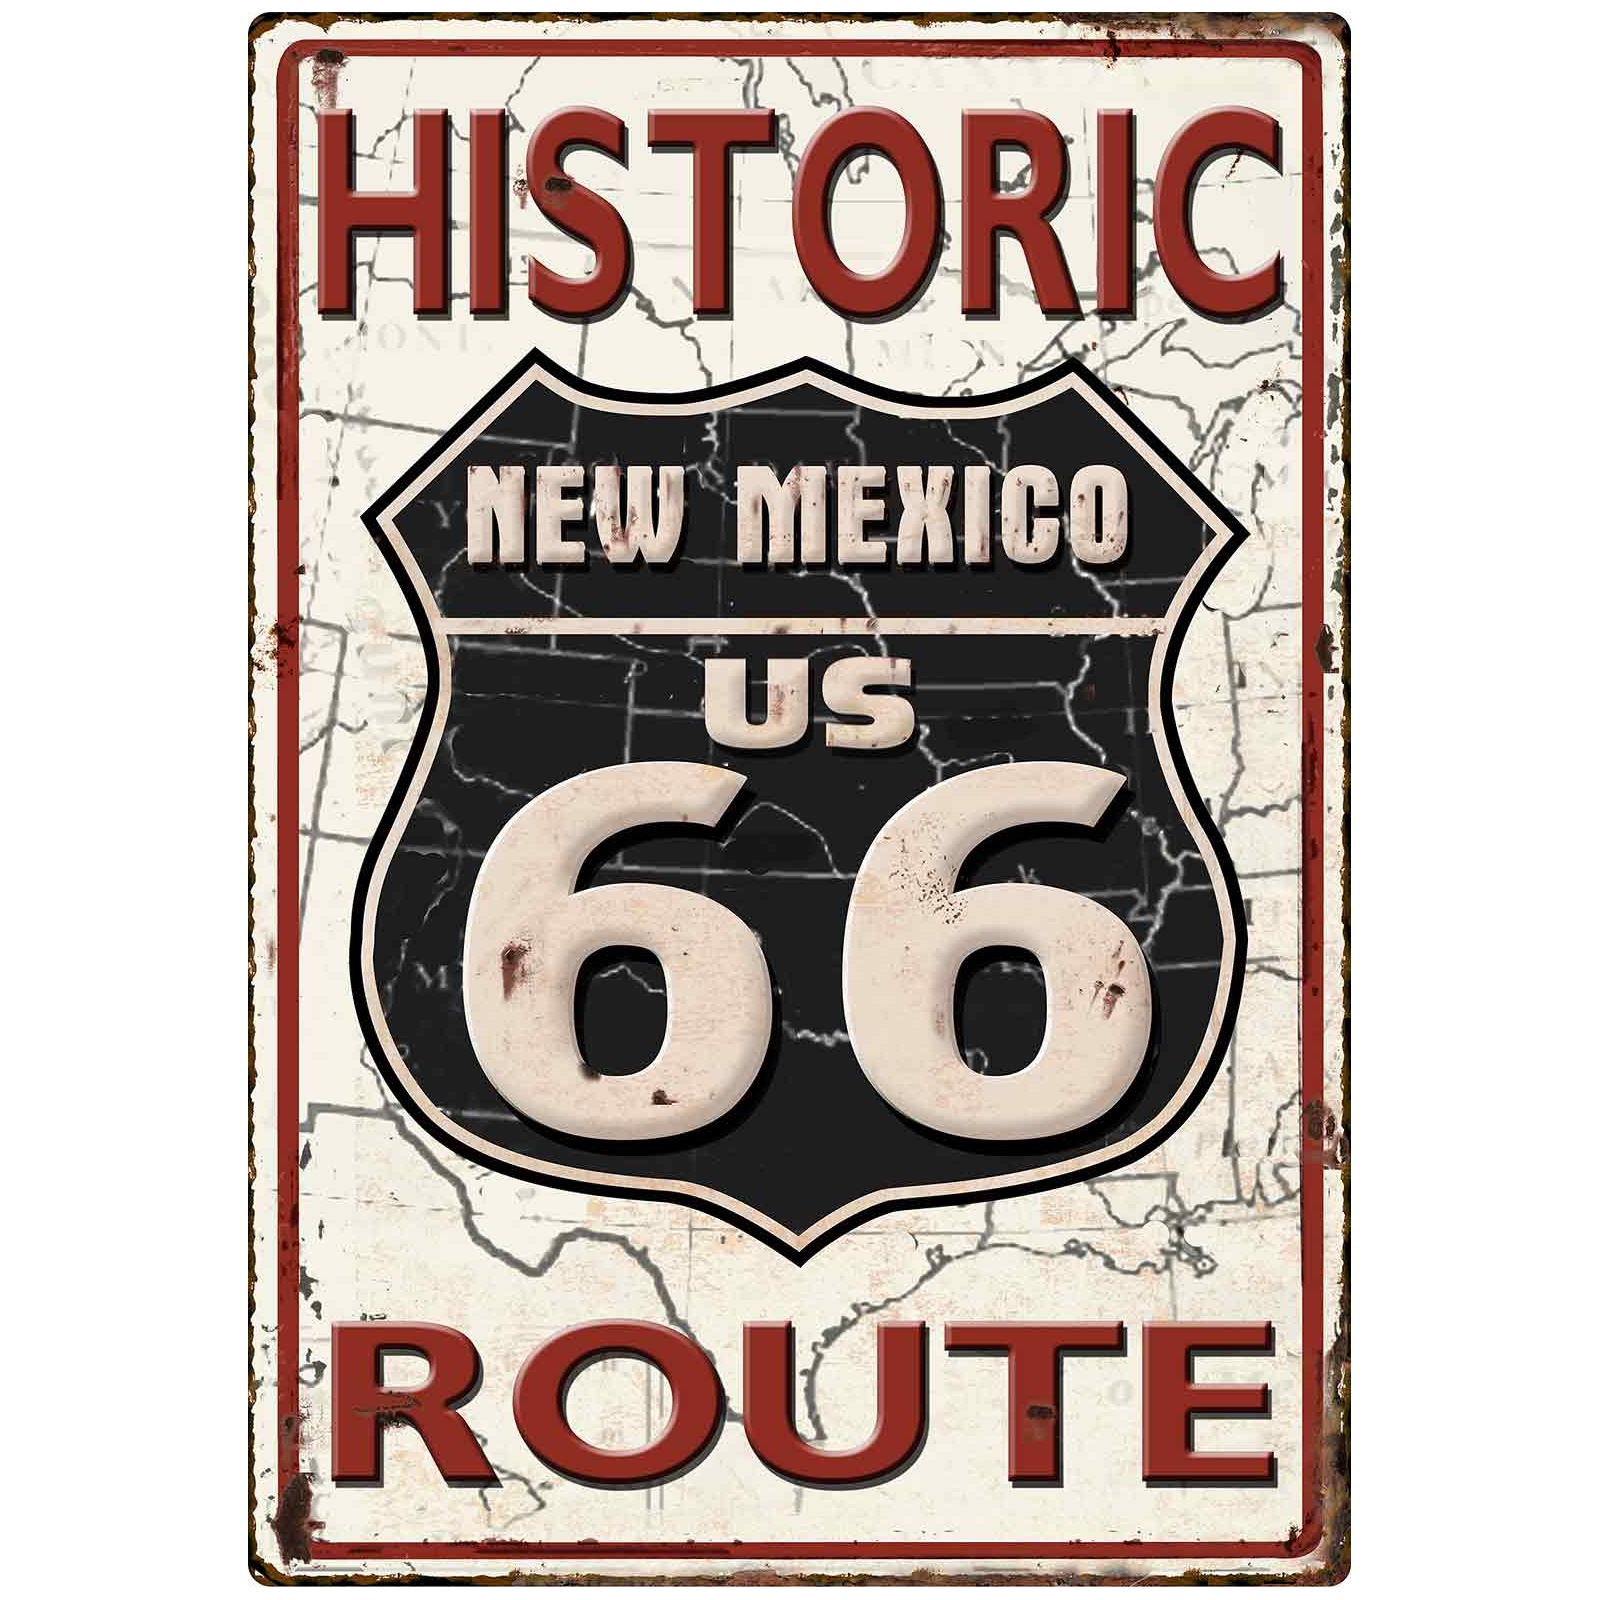 New Mexico US66